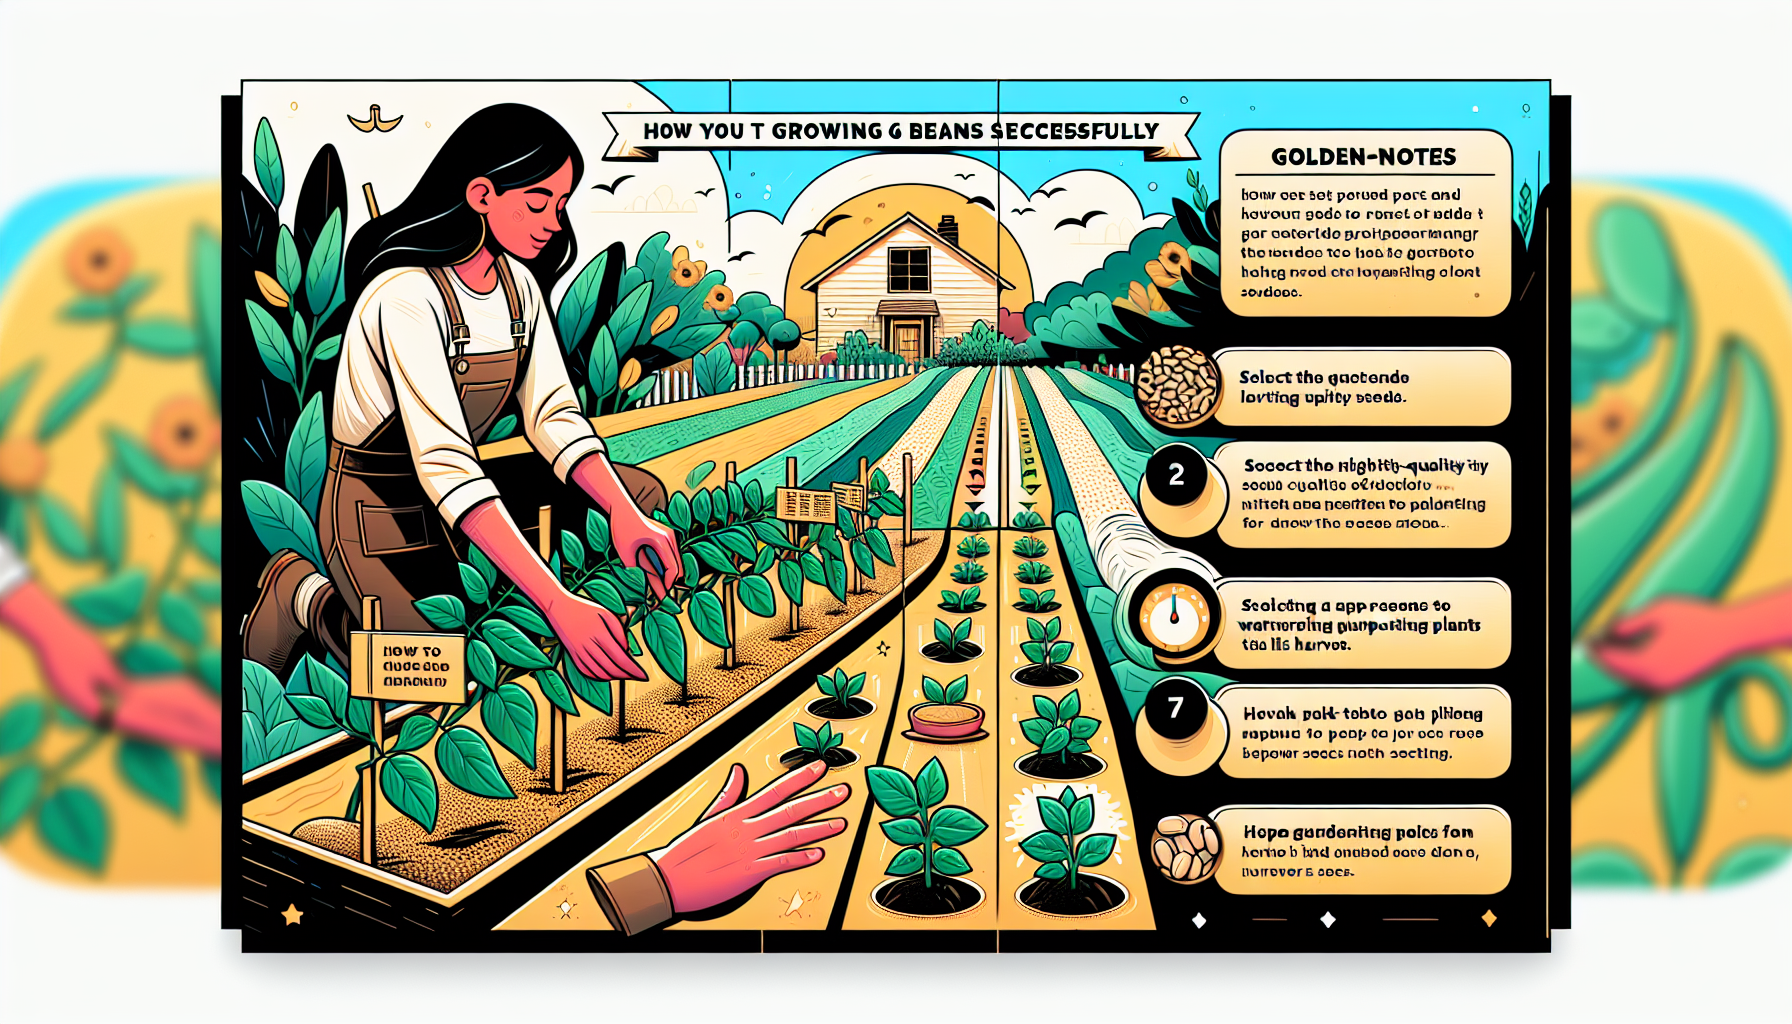 découvrez nos conseils d'experts pour cultiver des haricots comme un professionnel et réussir votre plantation de manière optimale.